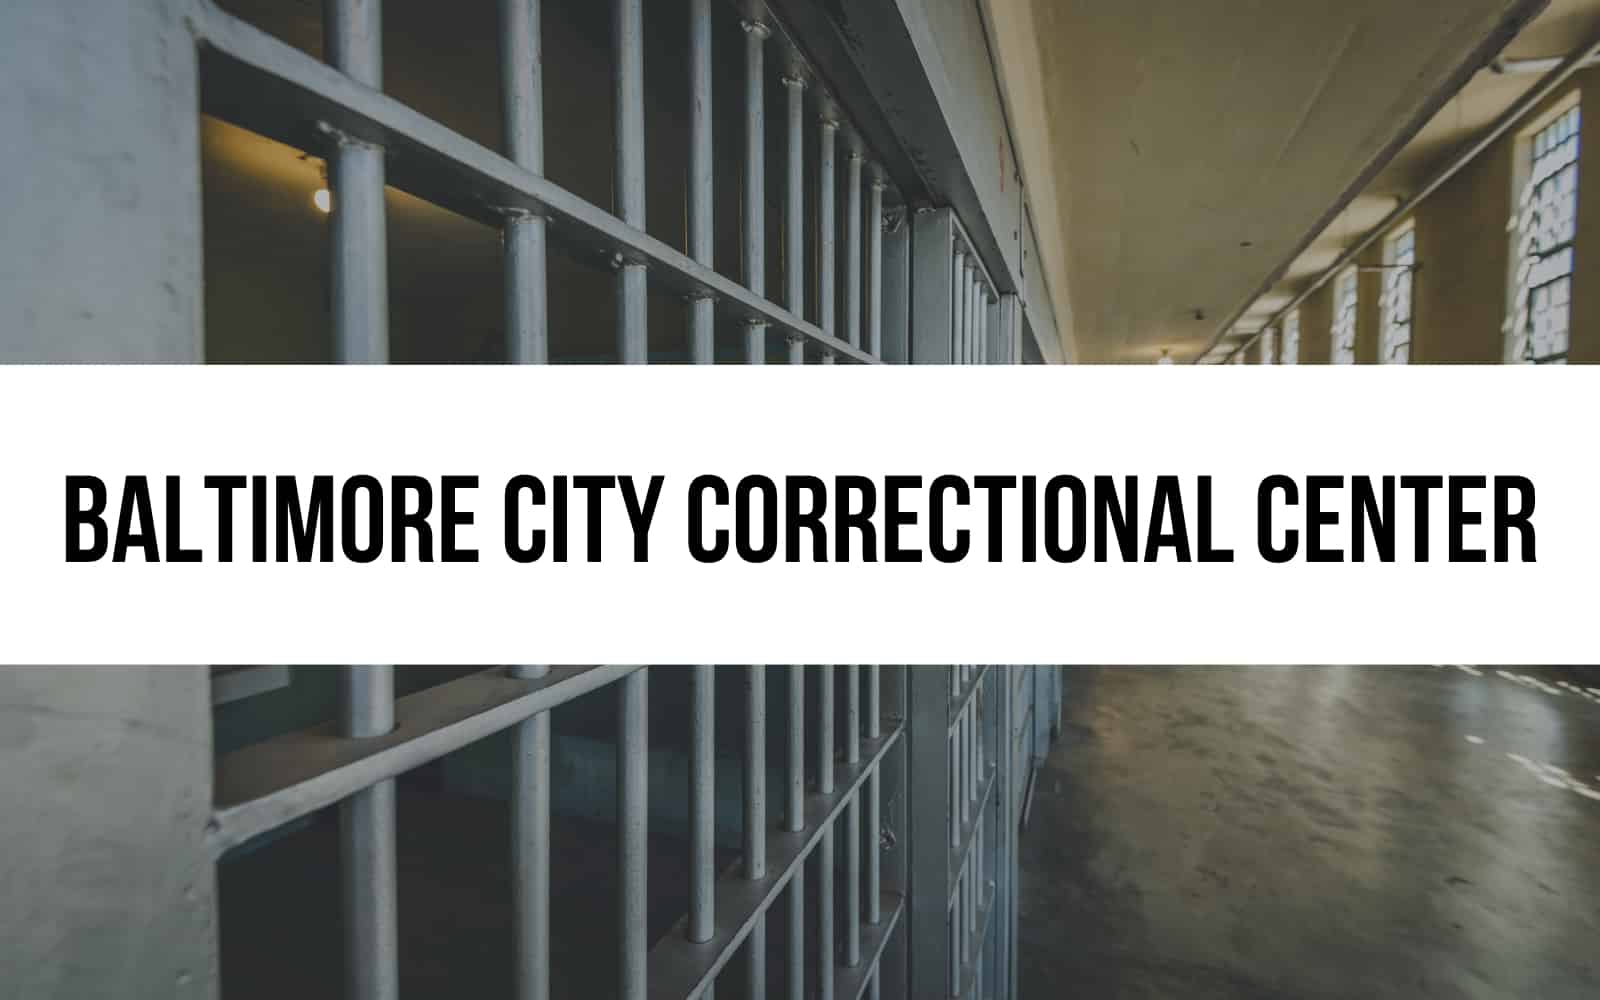 Baltimore City Correctional Center